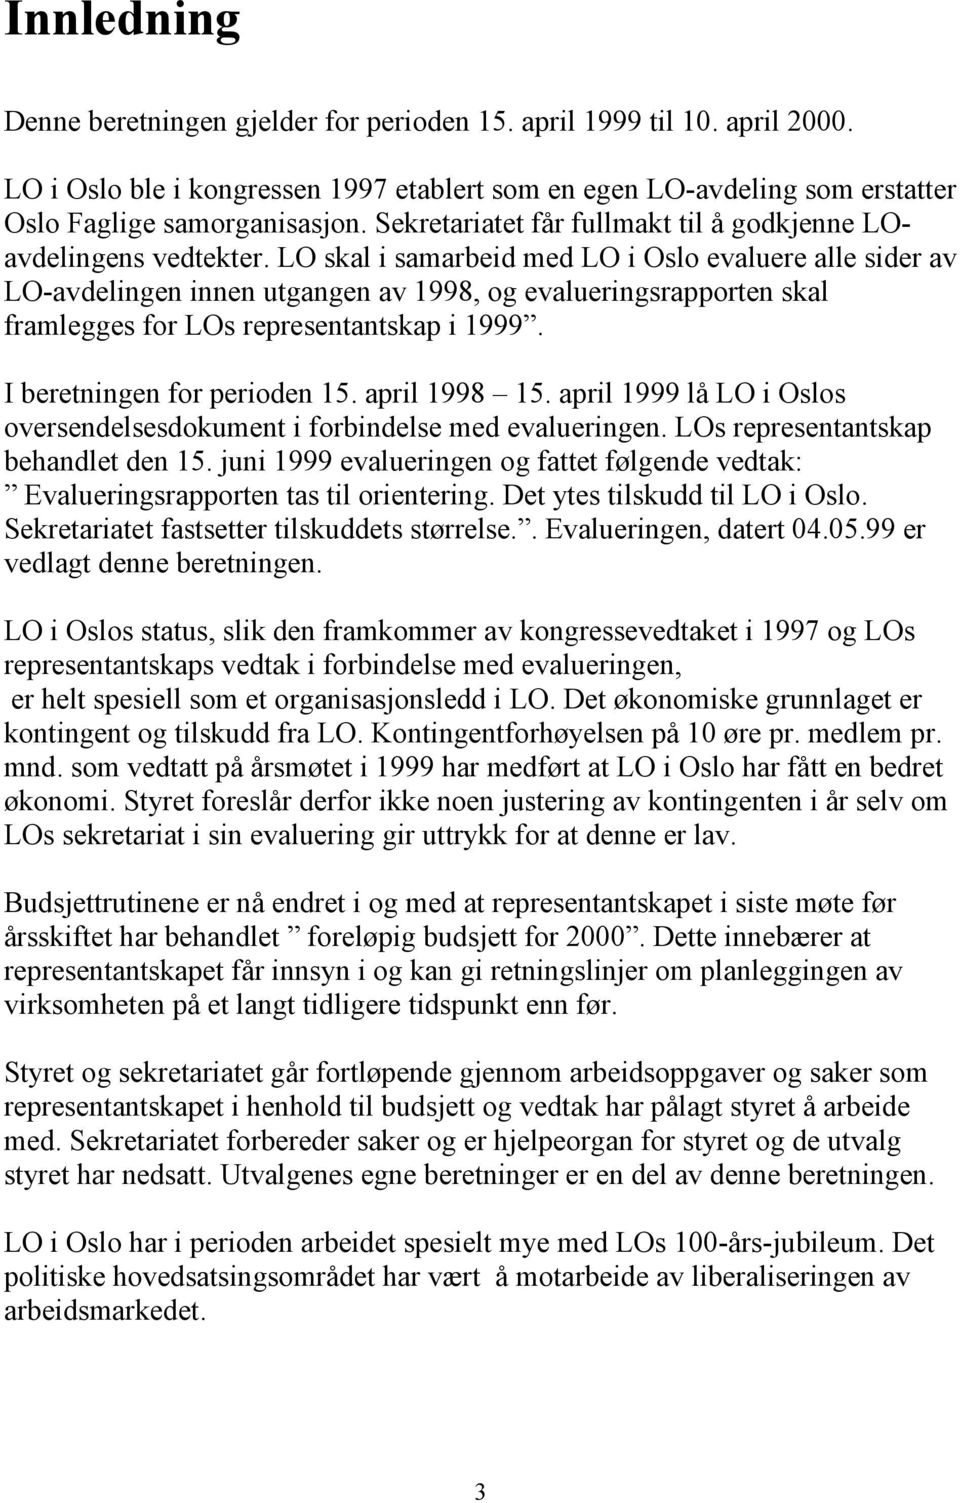 LO skal i samarbeid med LO i Oslo evaluere alle sider av LO-avdelingen innen utgangen av 1998, og evalueringsrapporten skal framlegges for LOs representantskap i 1999. I beretningen for perioden 15.